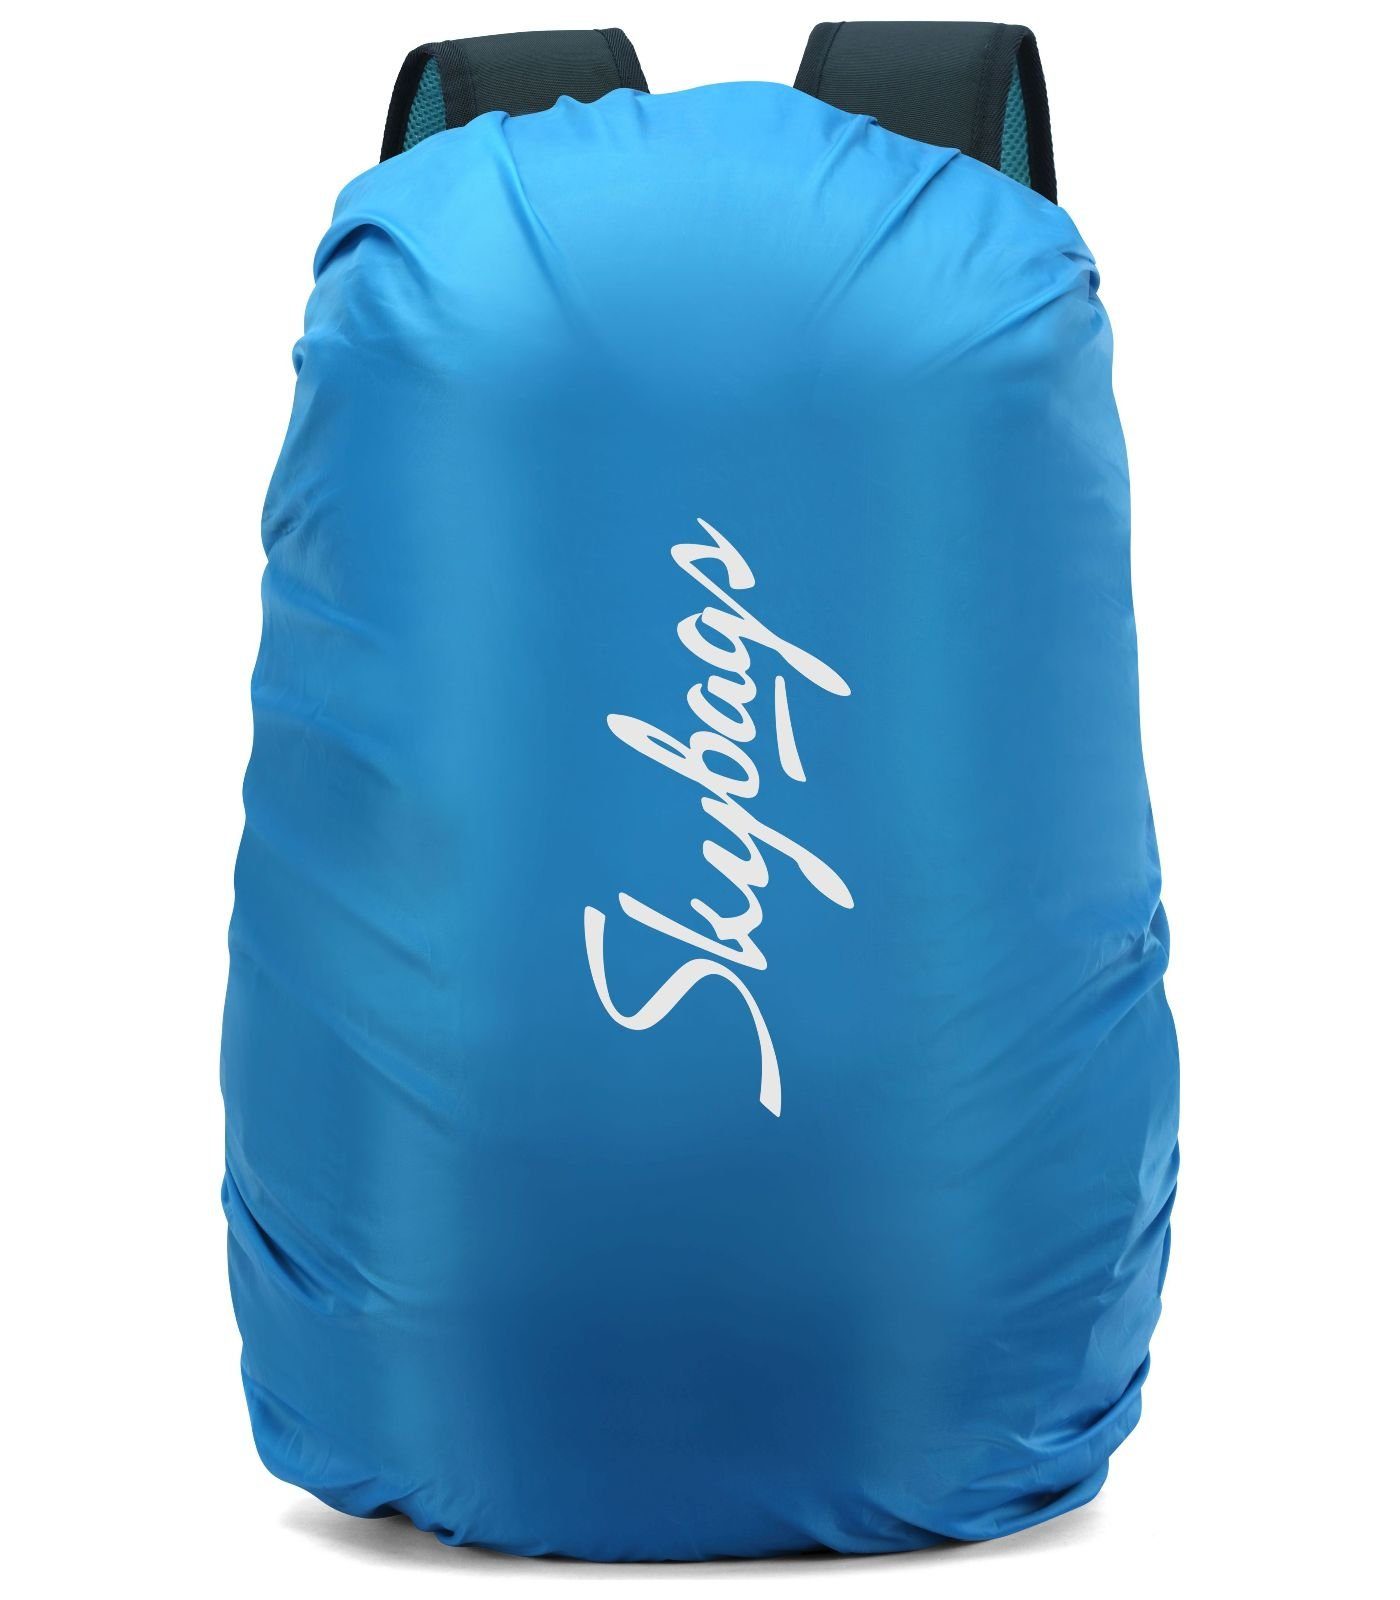 Textil Rucksack Taschen Skybags